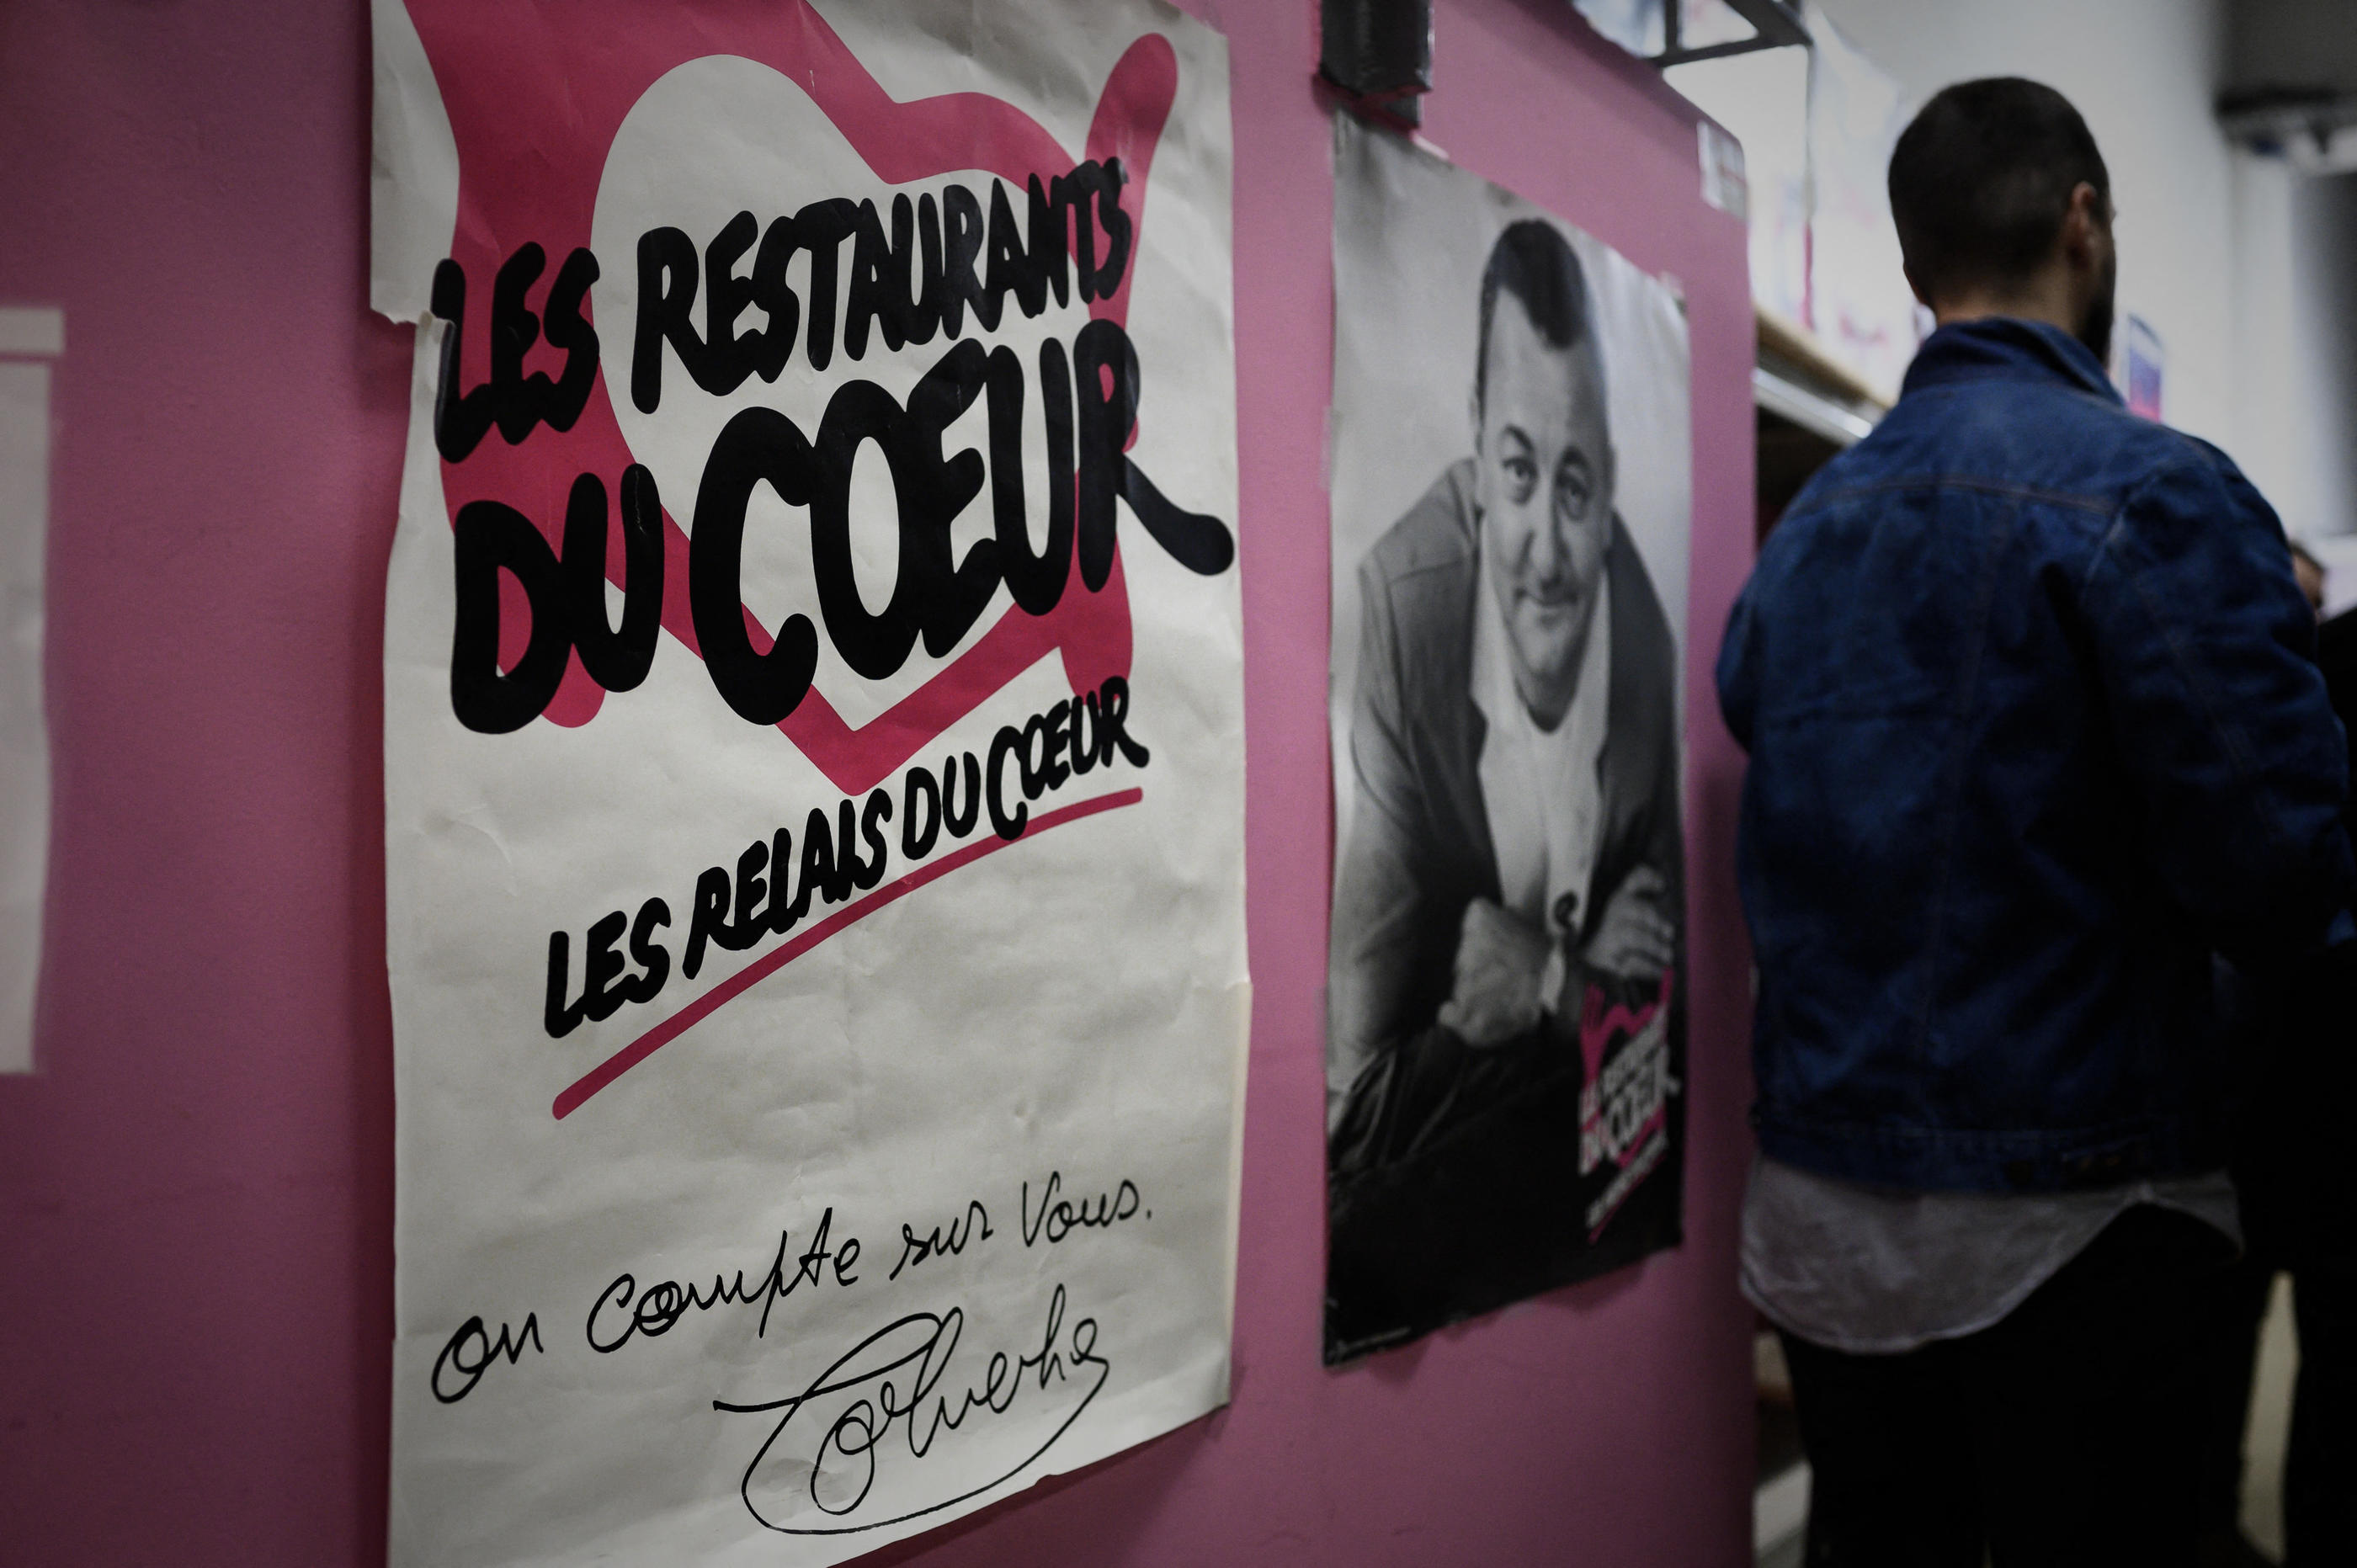 Restos du Coeur: la famille de Bernard Arnault annonce verser une aide de  10 millions d'euros - La Libre